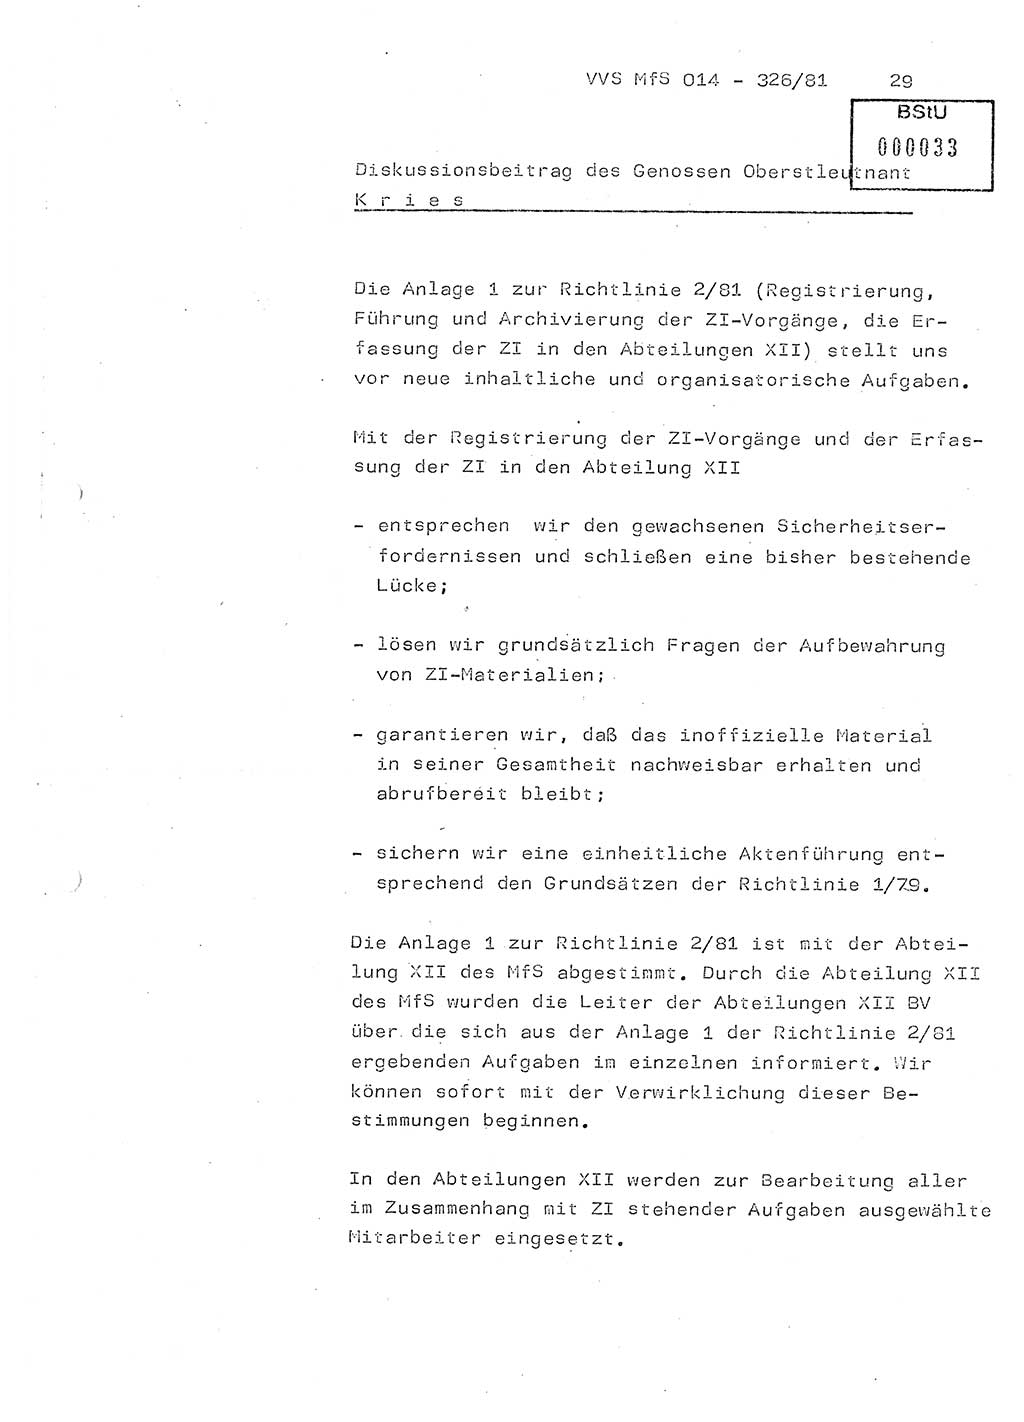 Thesen zum Einführungsvortrag für die Schulung zur Richtlinie Nr. 2/81 [zur Arbeit mit Zelleninformatoren (ZI)] des Genossen Minister (Generaloberst Erich Mielke), Ministerium für Staatssicherheit (MfS) [Deutsche Demokratische Republik (DDR)], Hauptabteilung (HA) Ⅸ, Vertrauliche Verschlußsache (VVS) 014-326/81, Berlin 1981, Seite 29 (Th. Sch. RL 2/81 MfS DDR HA Ⅸ VVS 014-326/81 1981, S. 29)